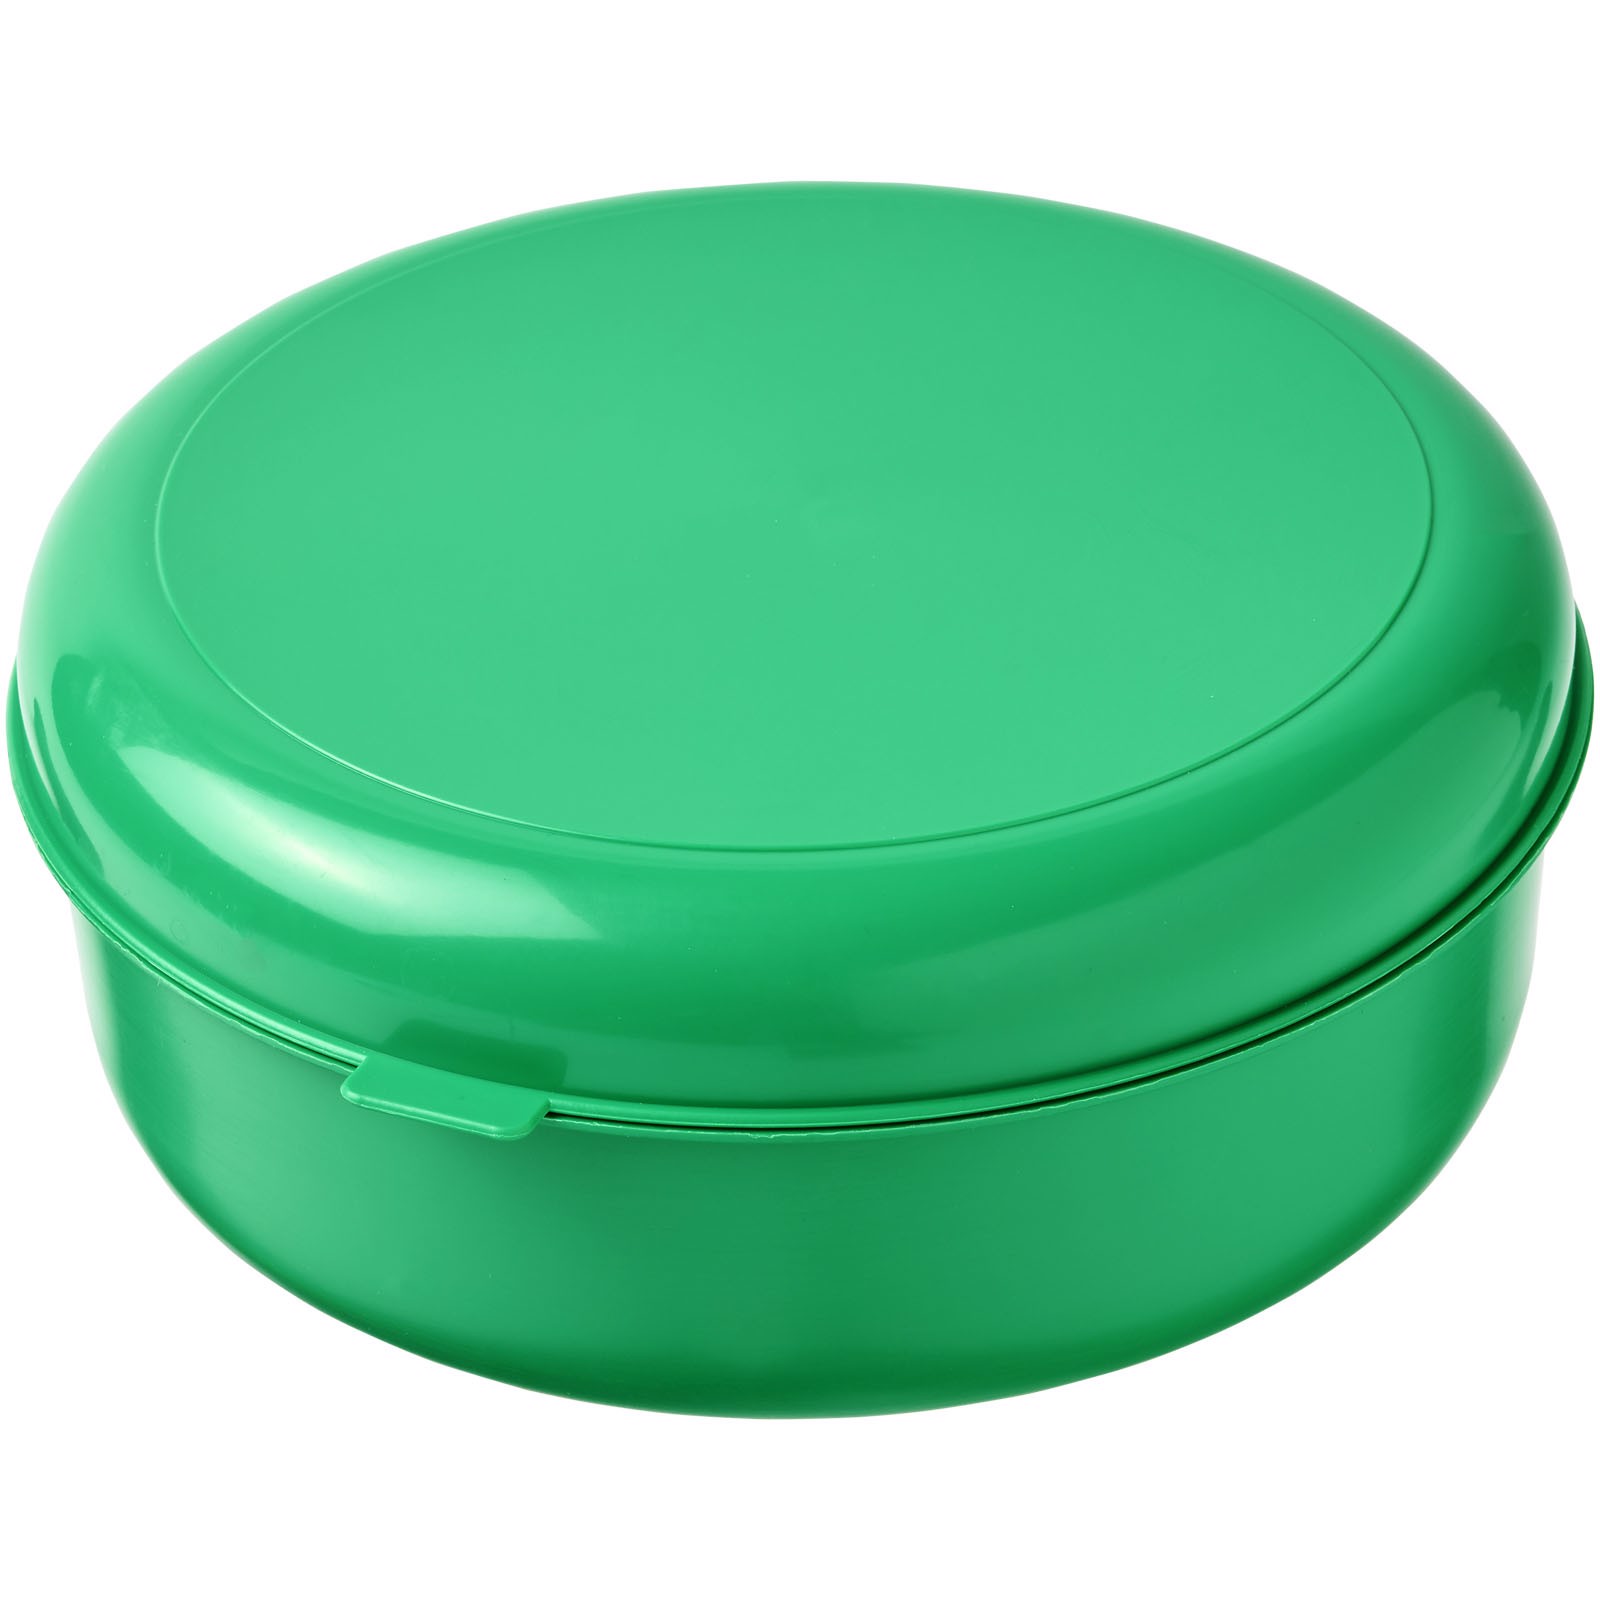 Okrągły pojemnik na makaron Miku wykonany z tworzywa sztucznego - Zielony